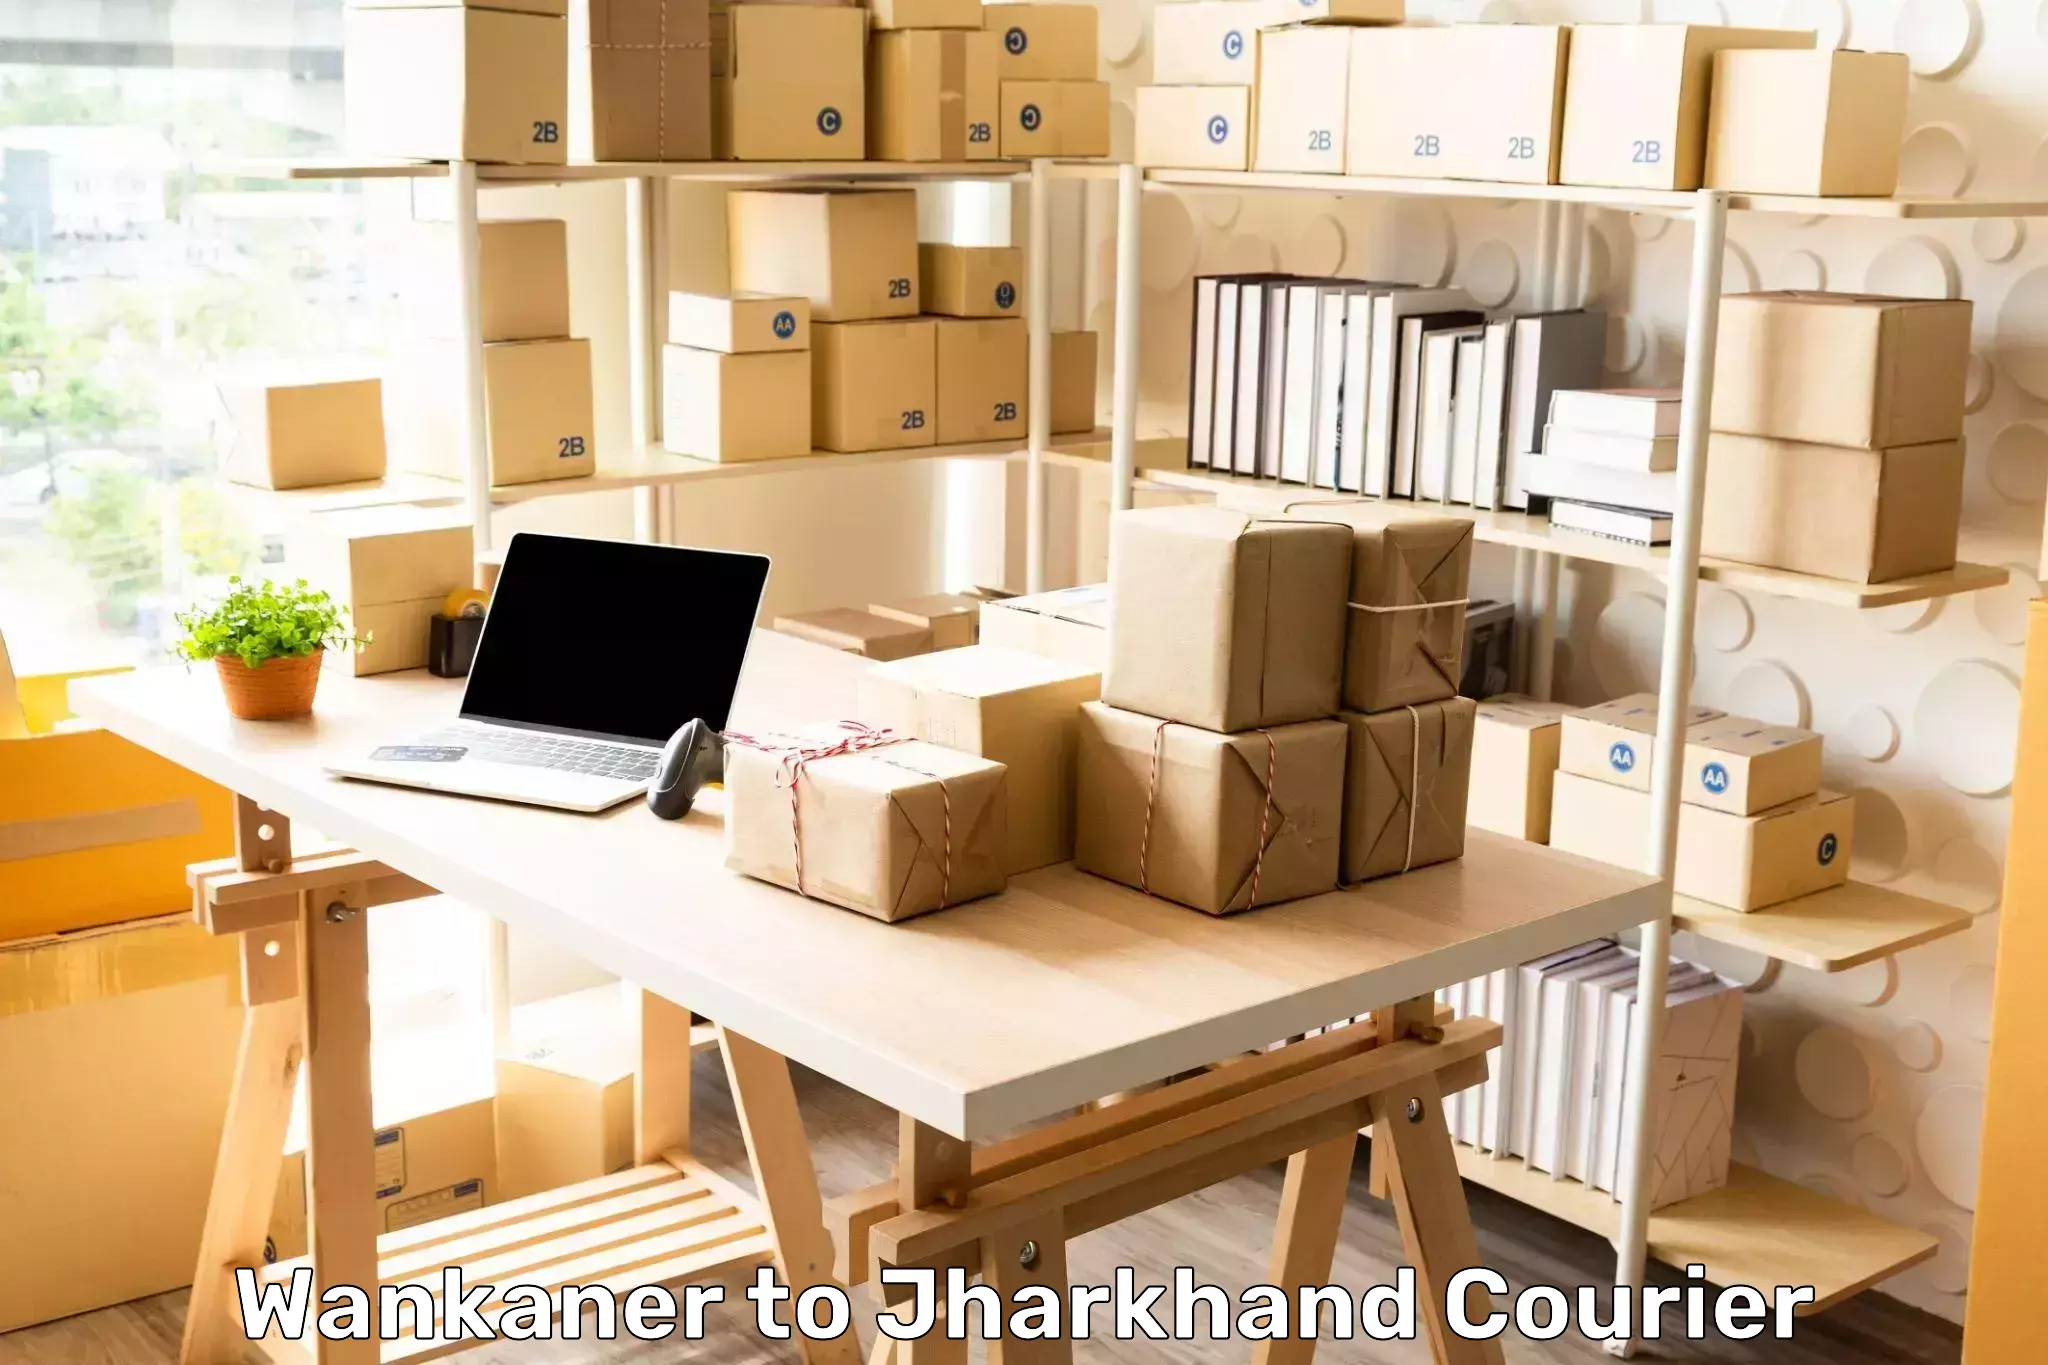 Custom courier packaging Wankaner to Chandwa